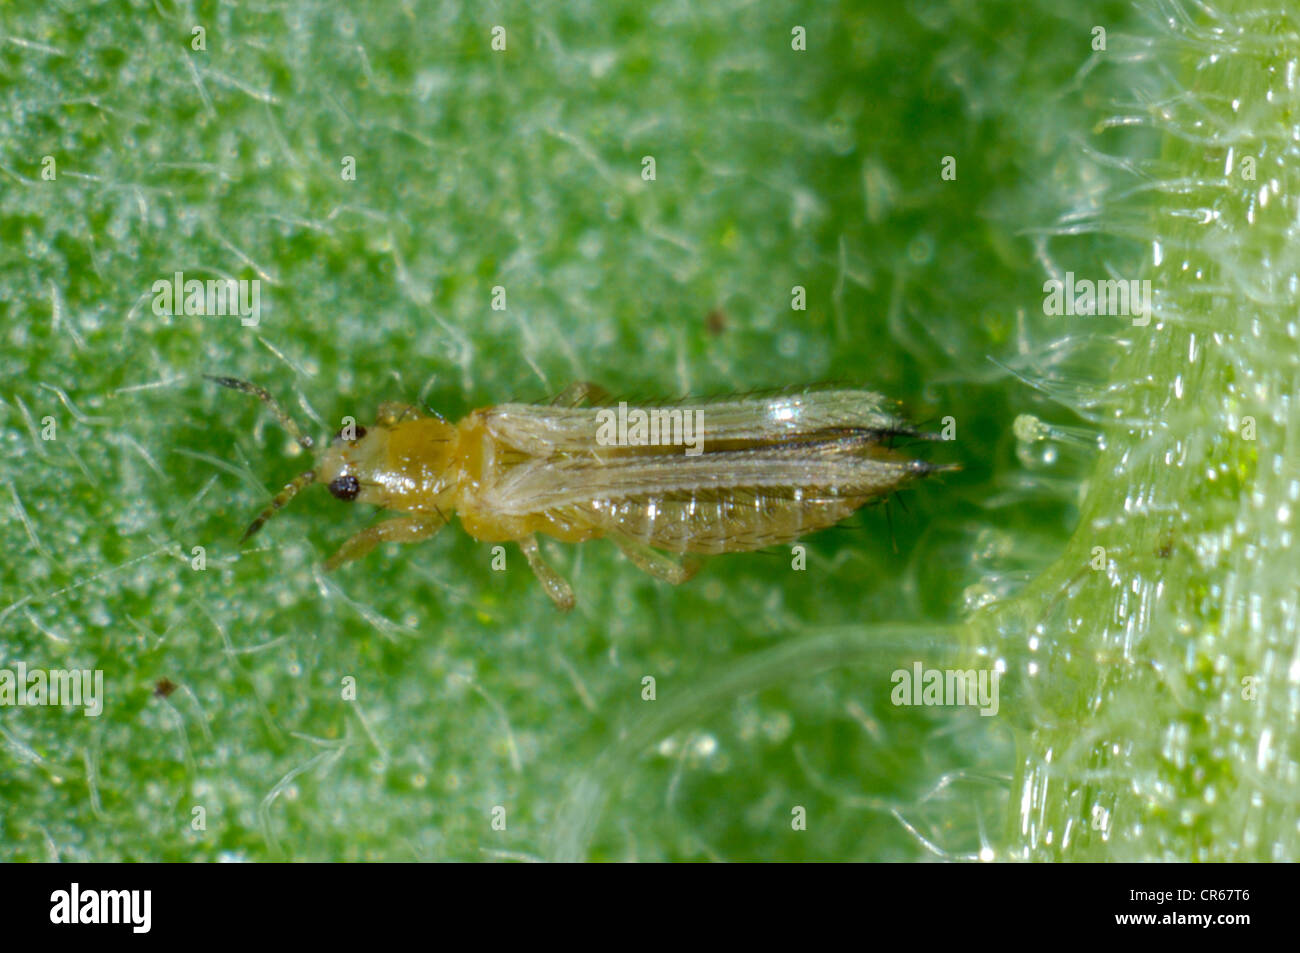 Western flower thrip (Frankliniella occidentalis) adult on a leaf Stock Photo